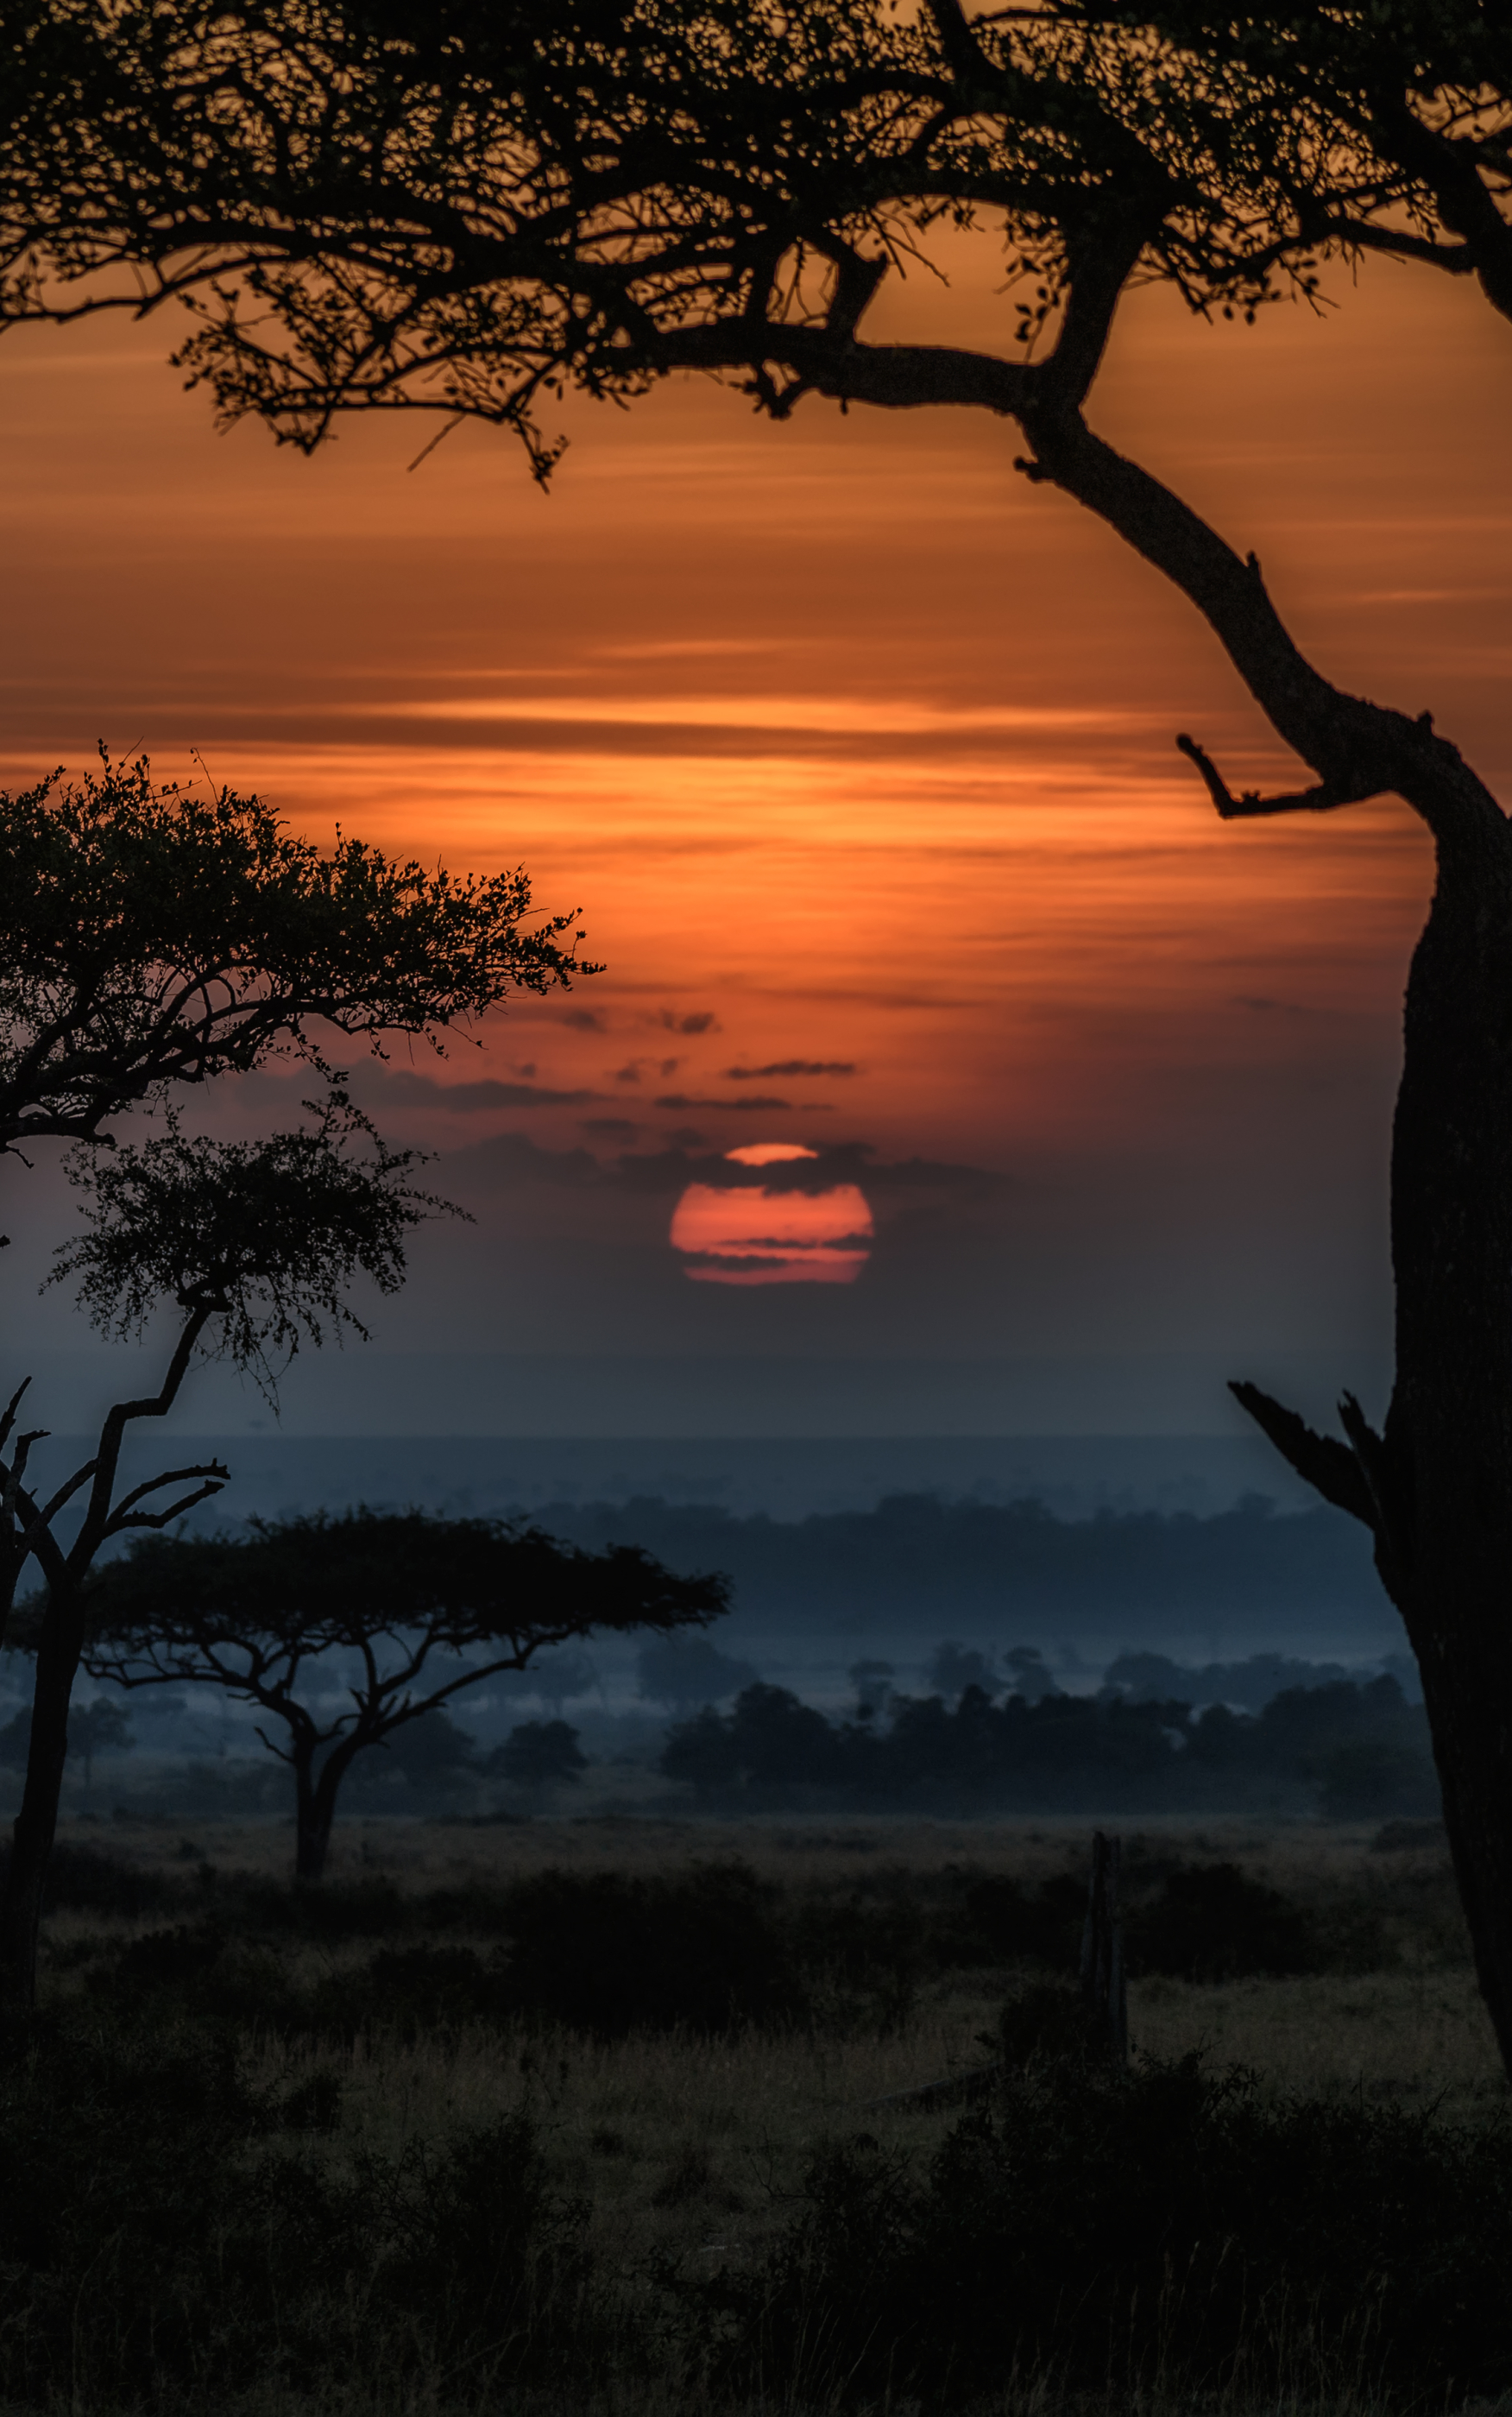 Descarga gratuita de fondo de pantalla para móvil de Paisaje, Sabana, Amanecer, África, Tierra/naturaleza, Kenia.